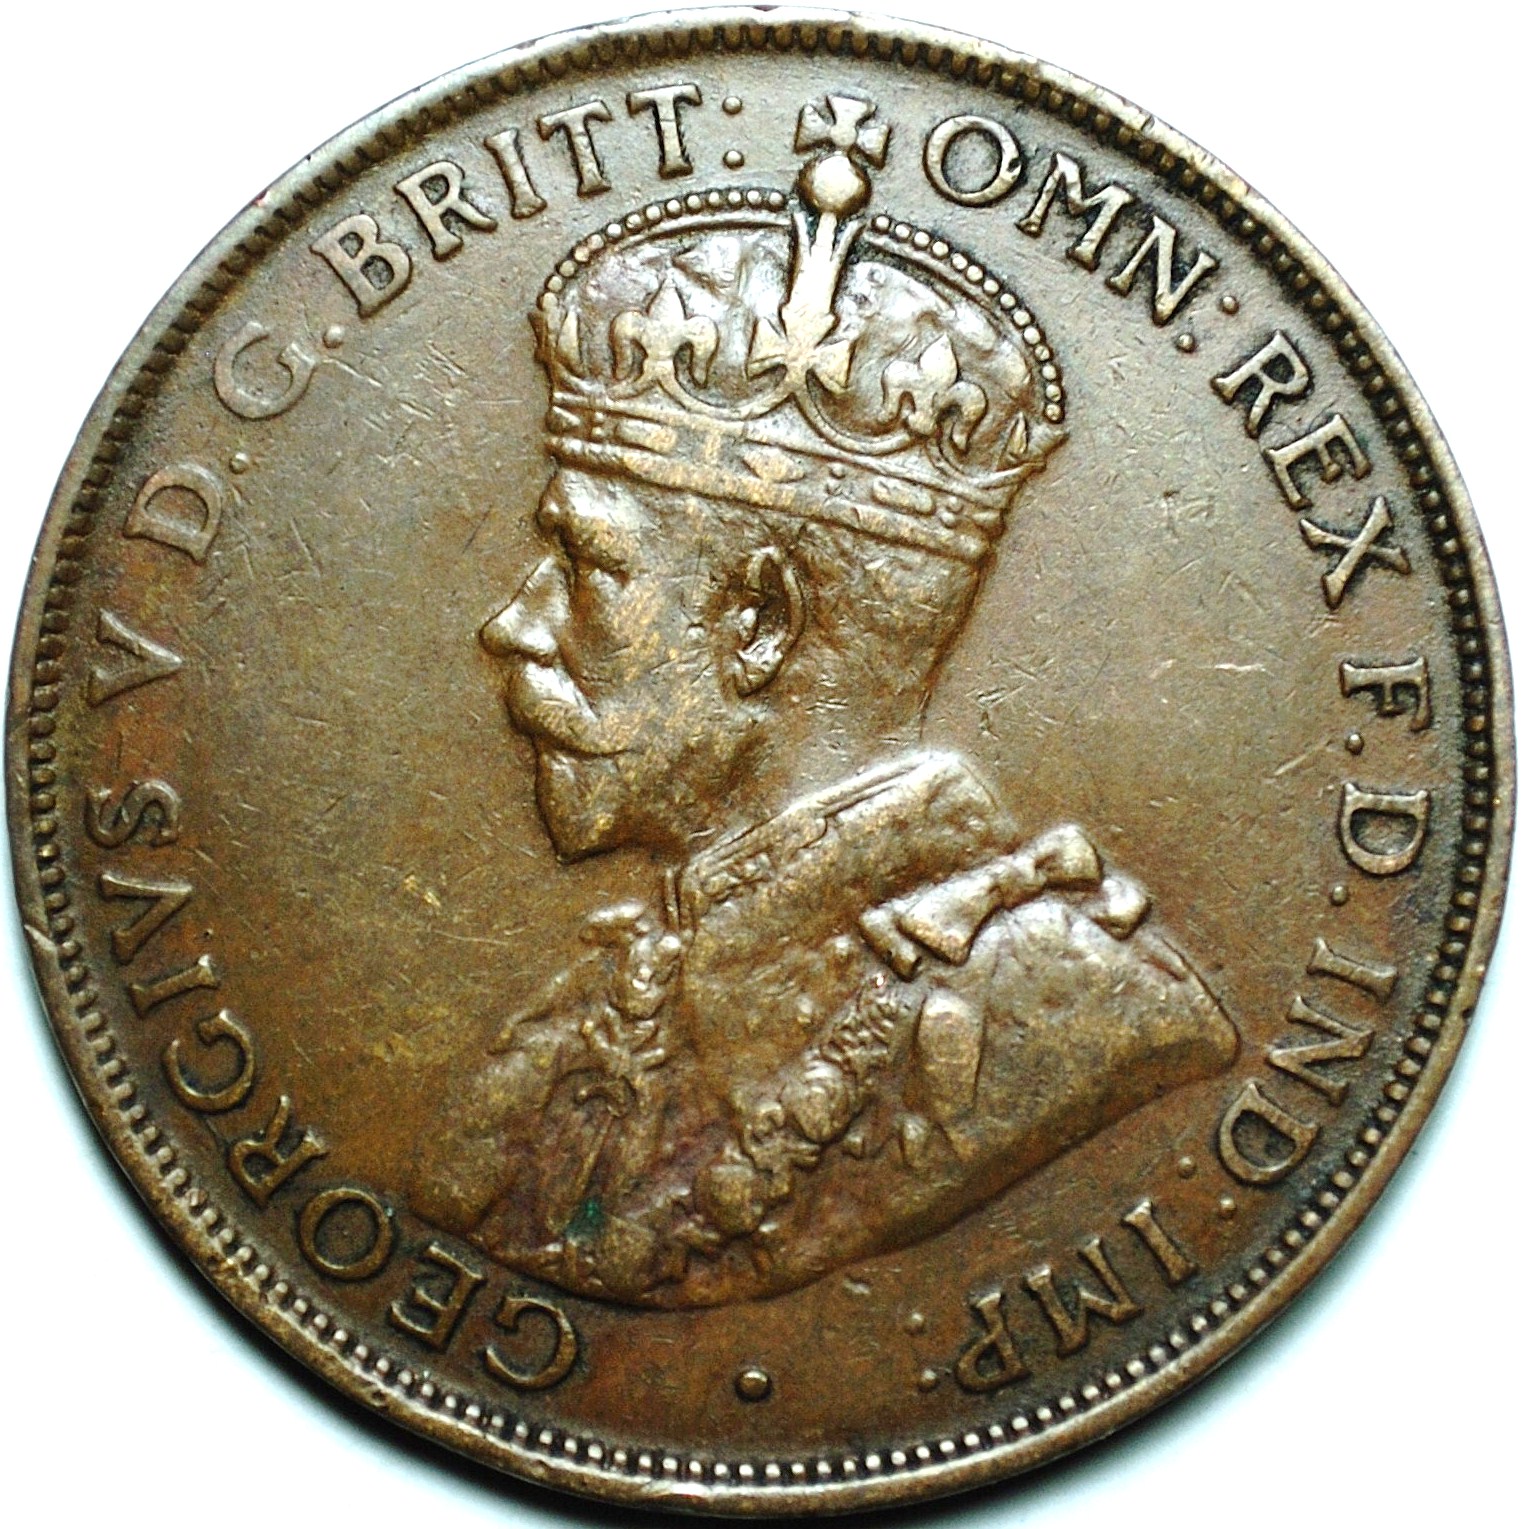 1926 Australian penny obverse